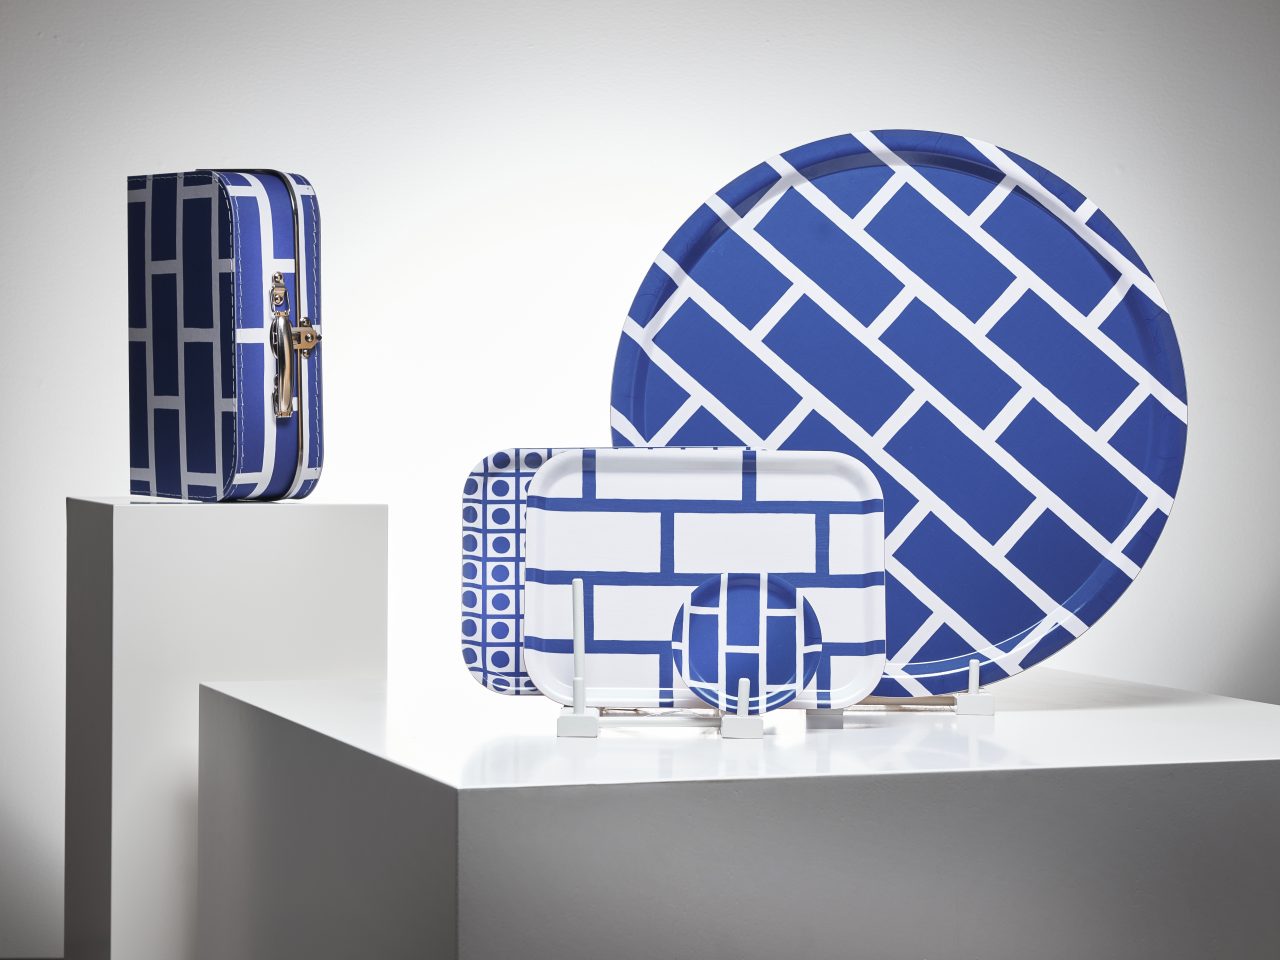 Ett glasunderlägg och brickor i olika storlekar, grafiska mönster och färger, och en liten resväska i blåvitt.